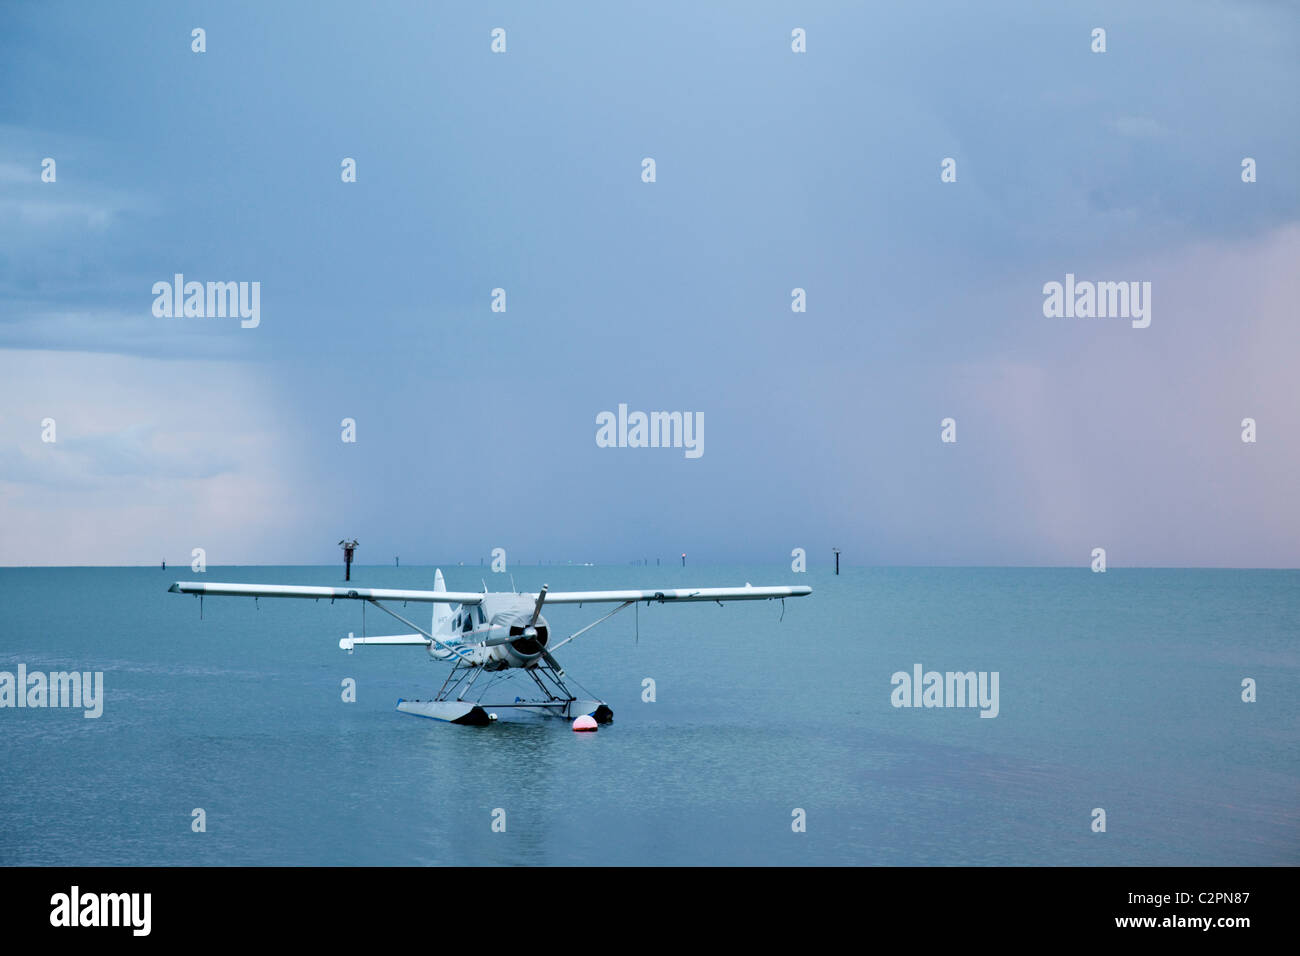 Wasserflugzeug mit Regen Sturm im Hintergrund. Cairns, Queensland, Australien Stockfoto